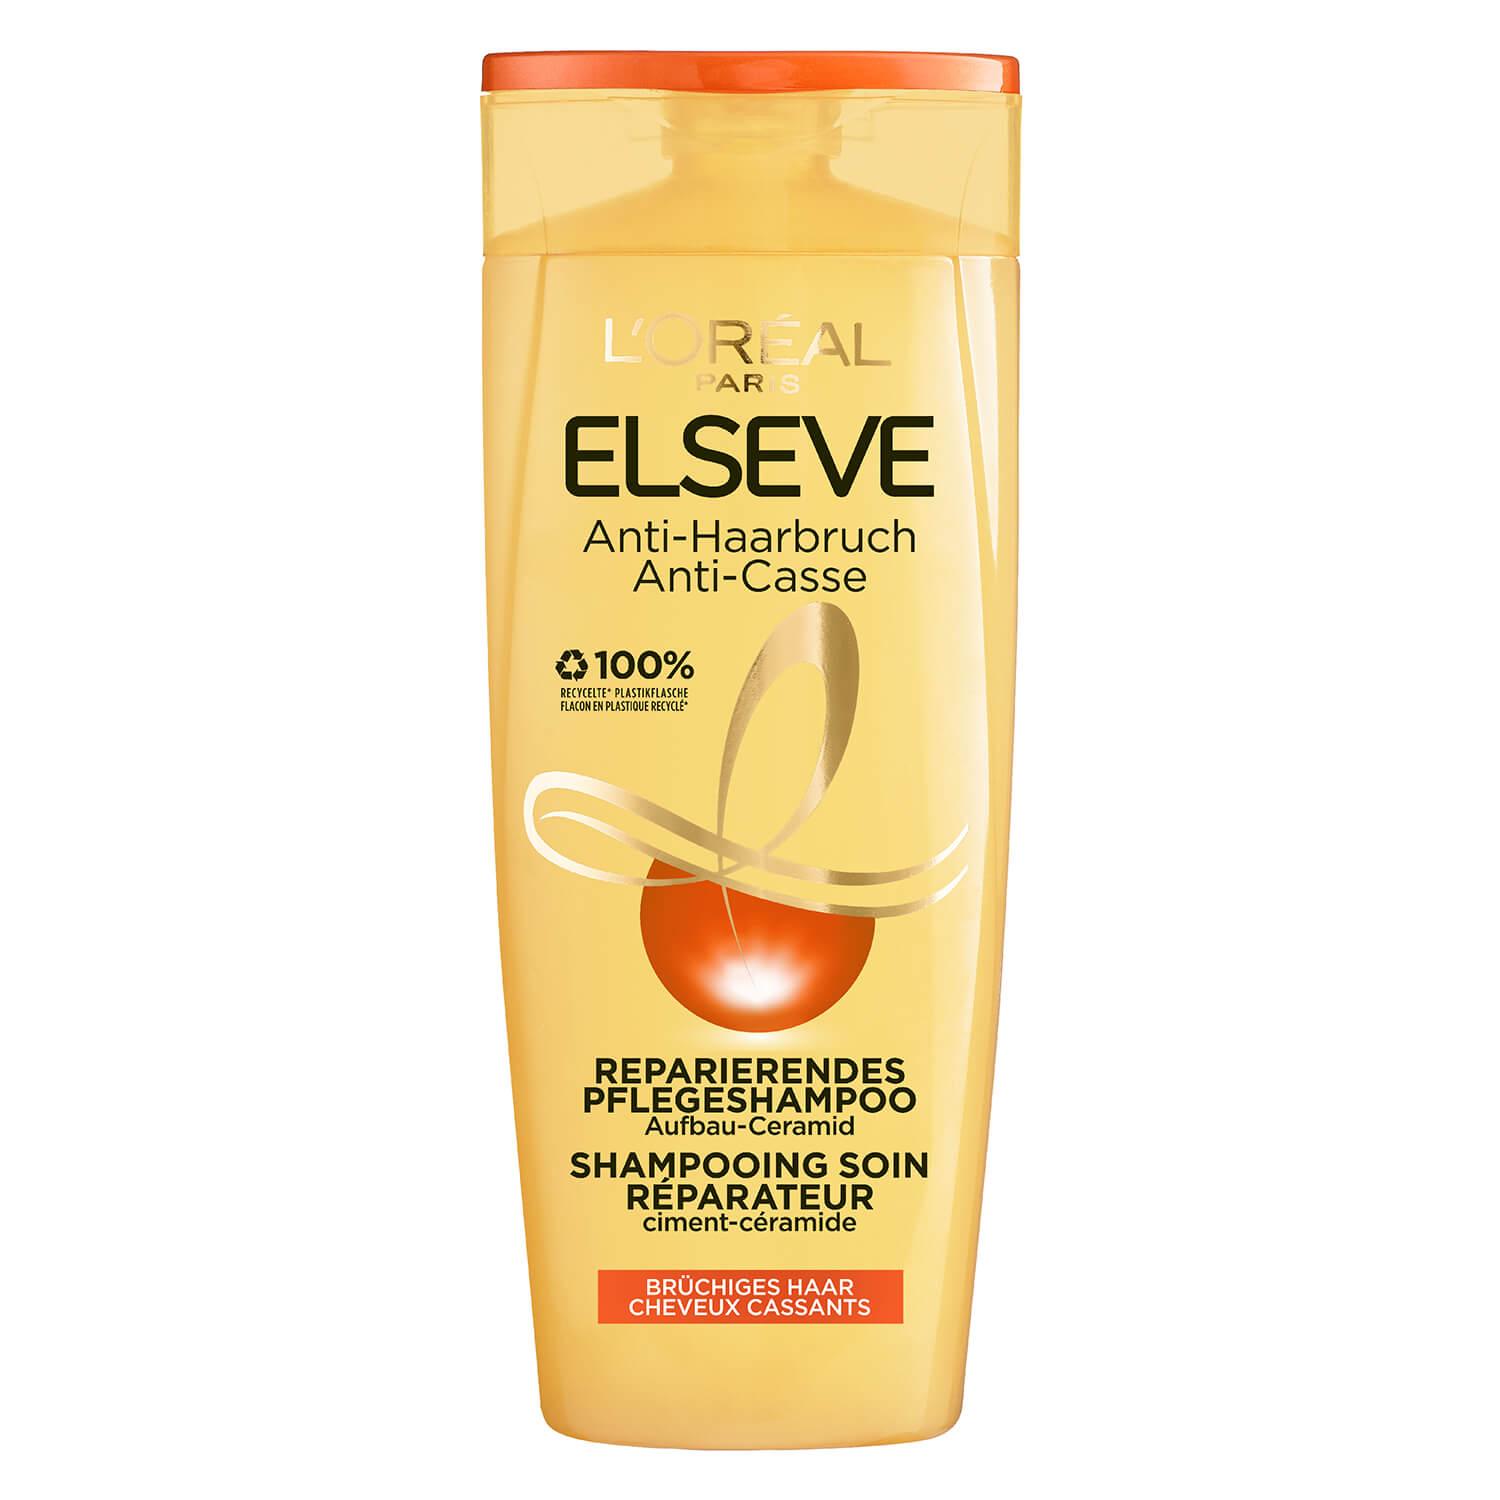 LOréal Elseve Haircare - Anti-Casse Shampooing Soin Réparateur